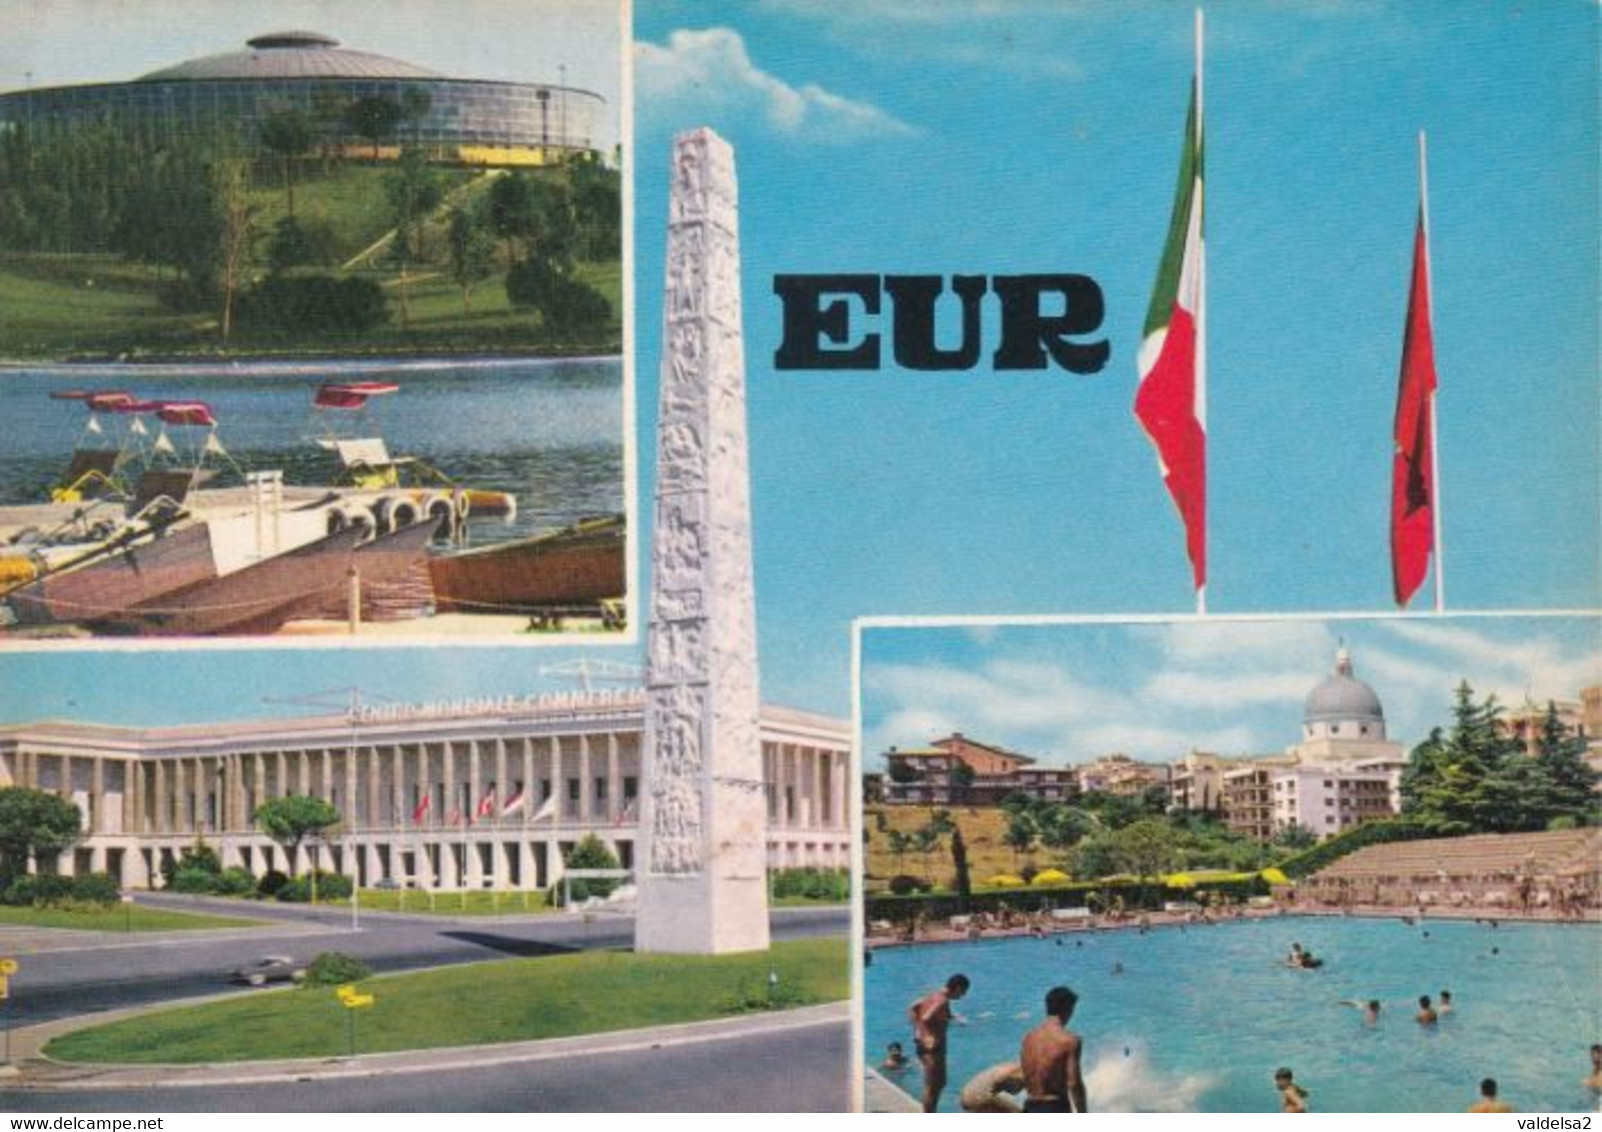 ROMA EUR - 4 VEDUTE - PISCINA - LAGO - STELE A GUGLIELMO MARCONI - CENTRO COMMERCIALE MONDIALE - 1970 - Mostre, Esposizioni